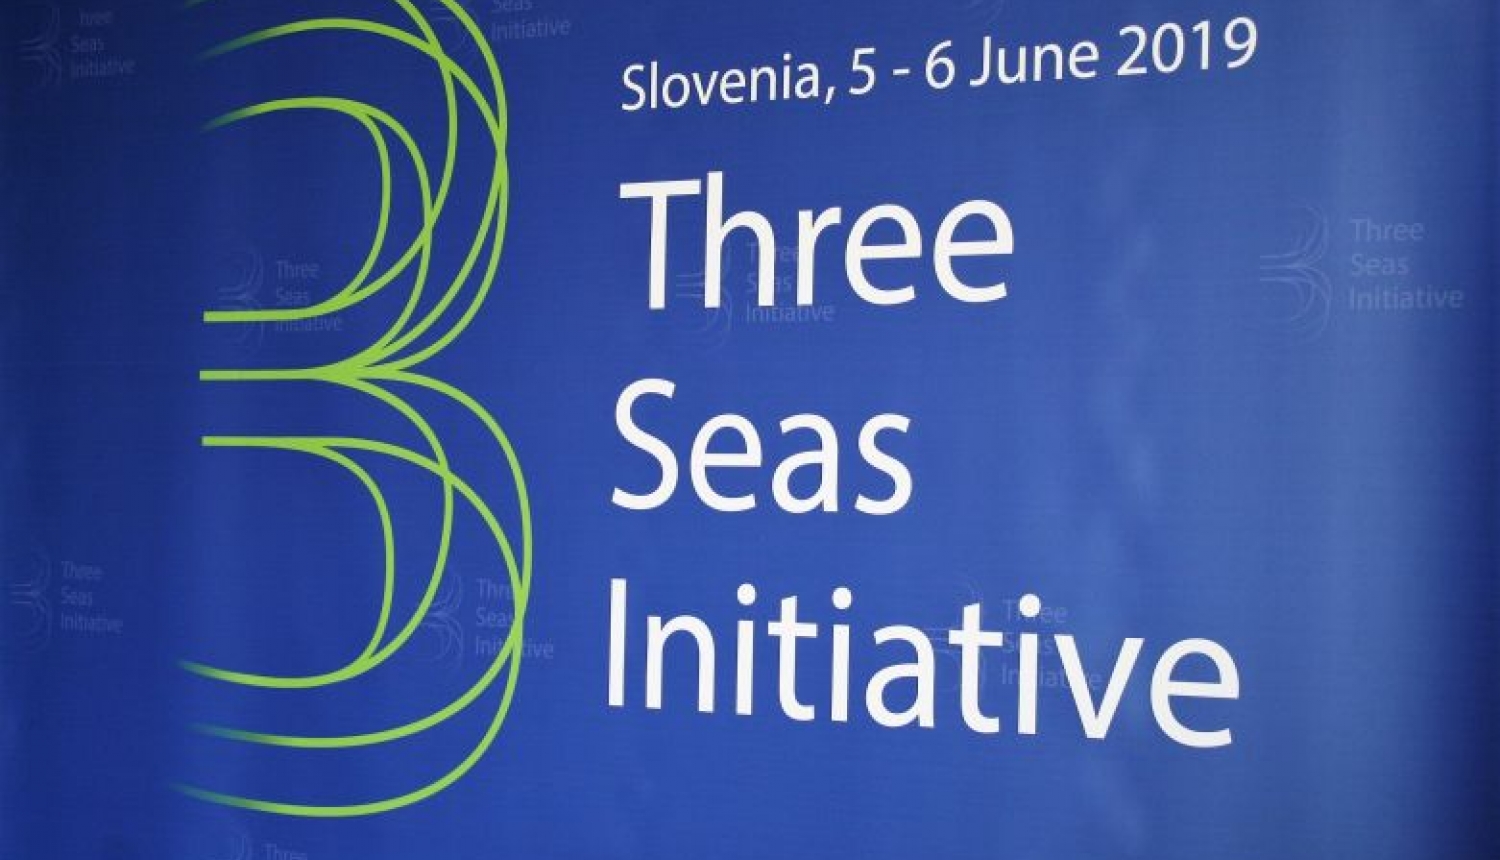 Valsts prezidents piedalās Trīs jūru iniciatīvas samitā Slovēnijā